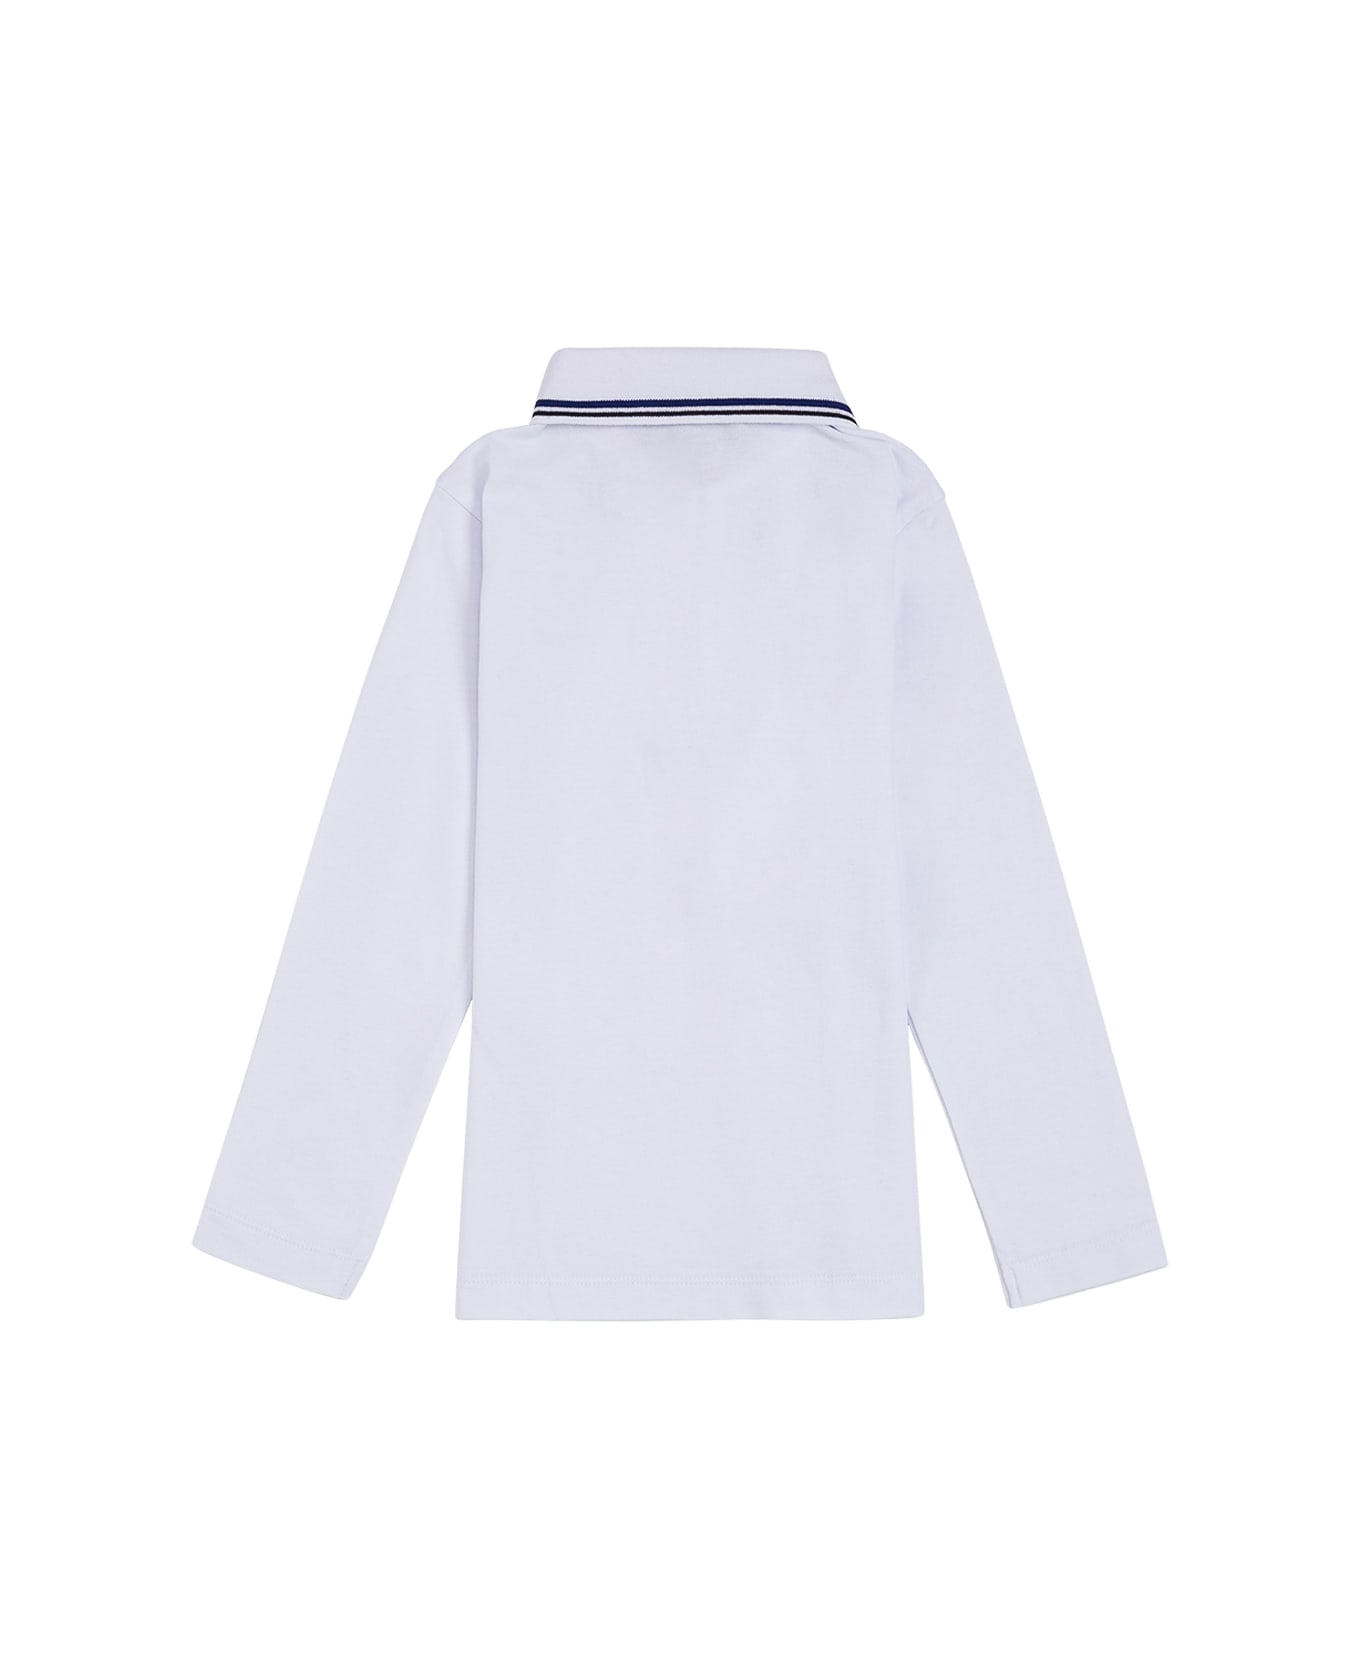 Emporio Armani White Cotton Polo Shirt With Logo - White